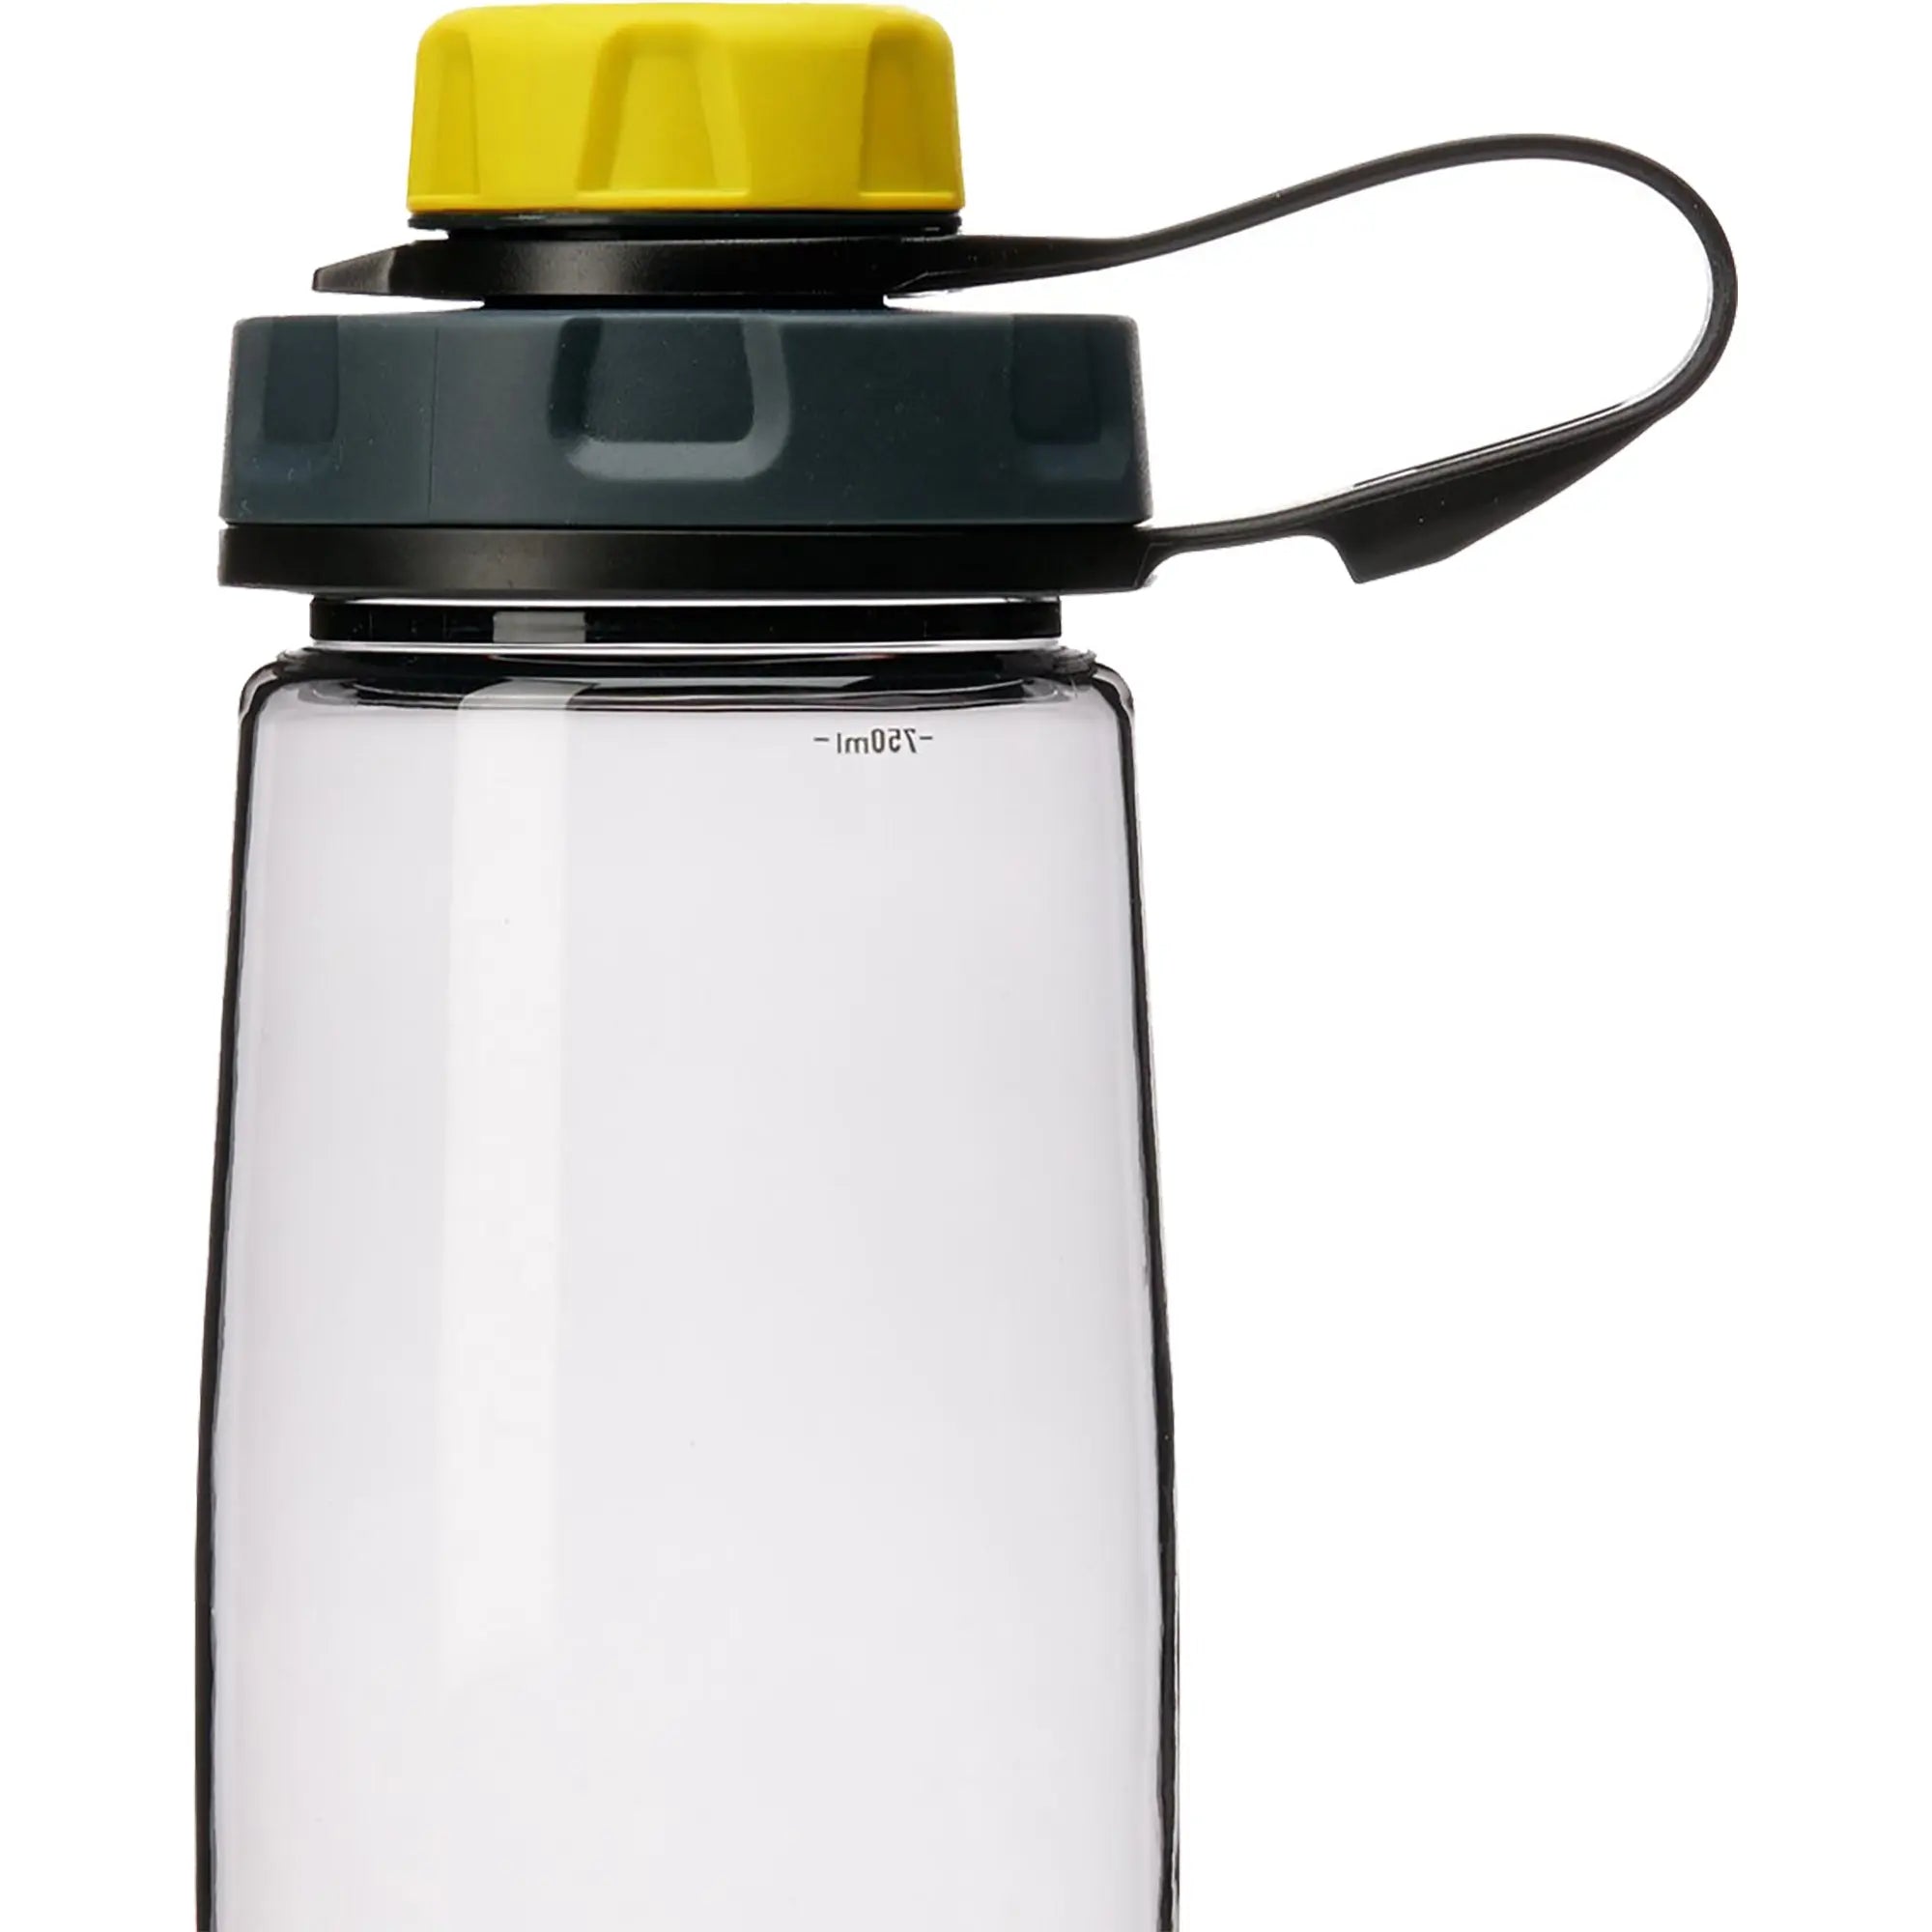 Humangear capCAP+ 63mm Universal Water Bottle Cap Humangear